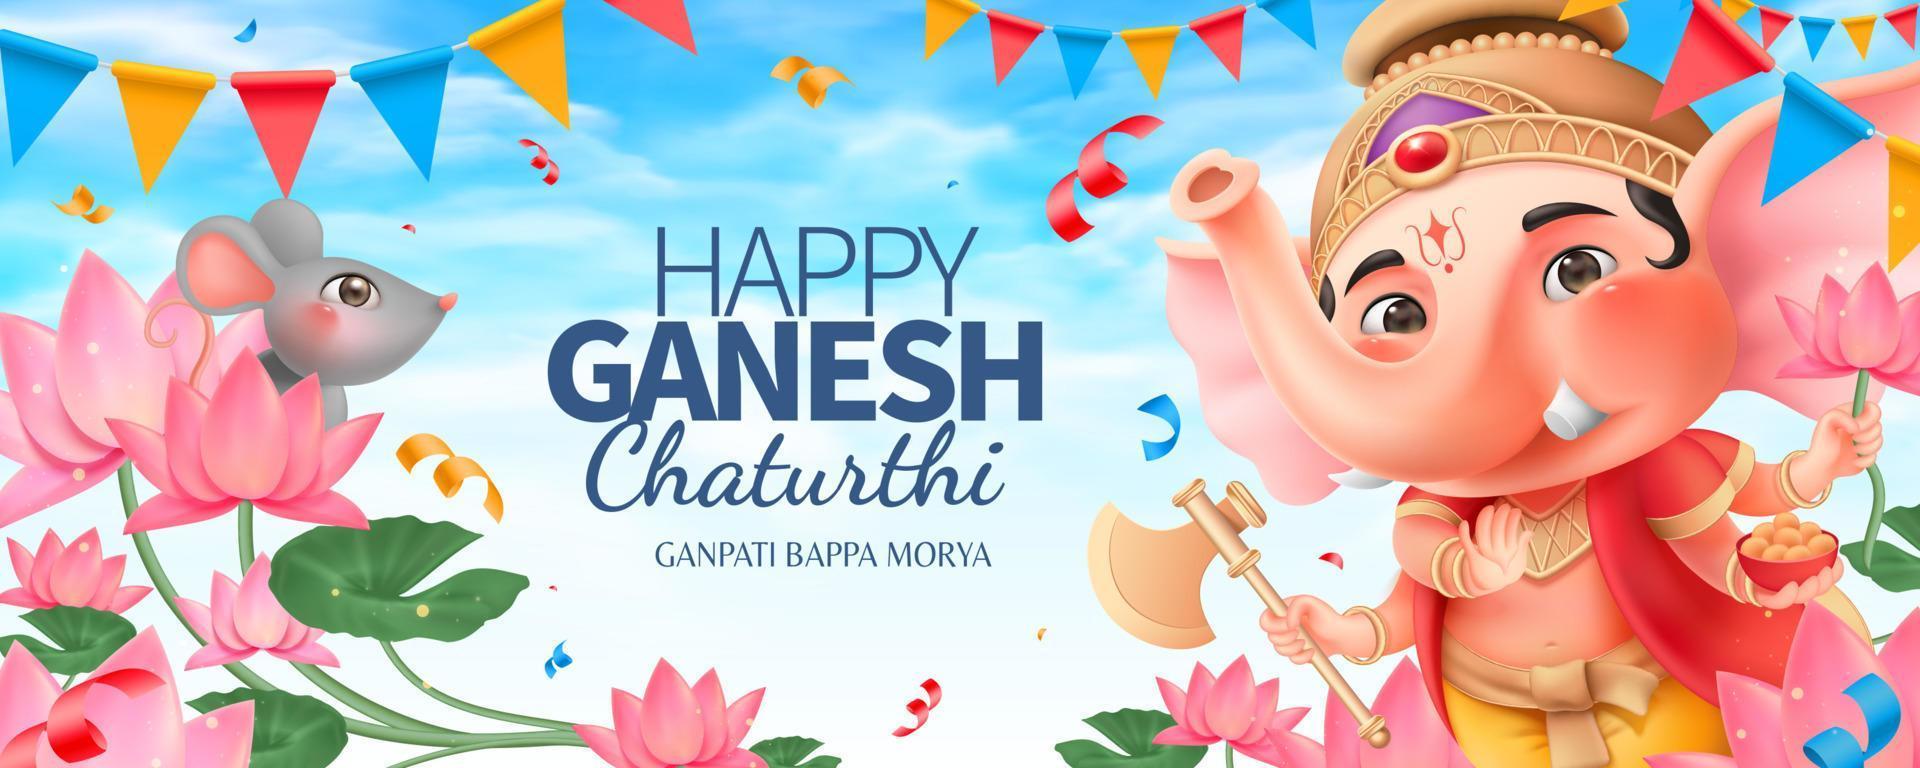 feliz diseño de banner de ganesh chaturthi con adorable ganesha gordito y hermoso jardín de loto vector